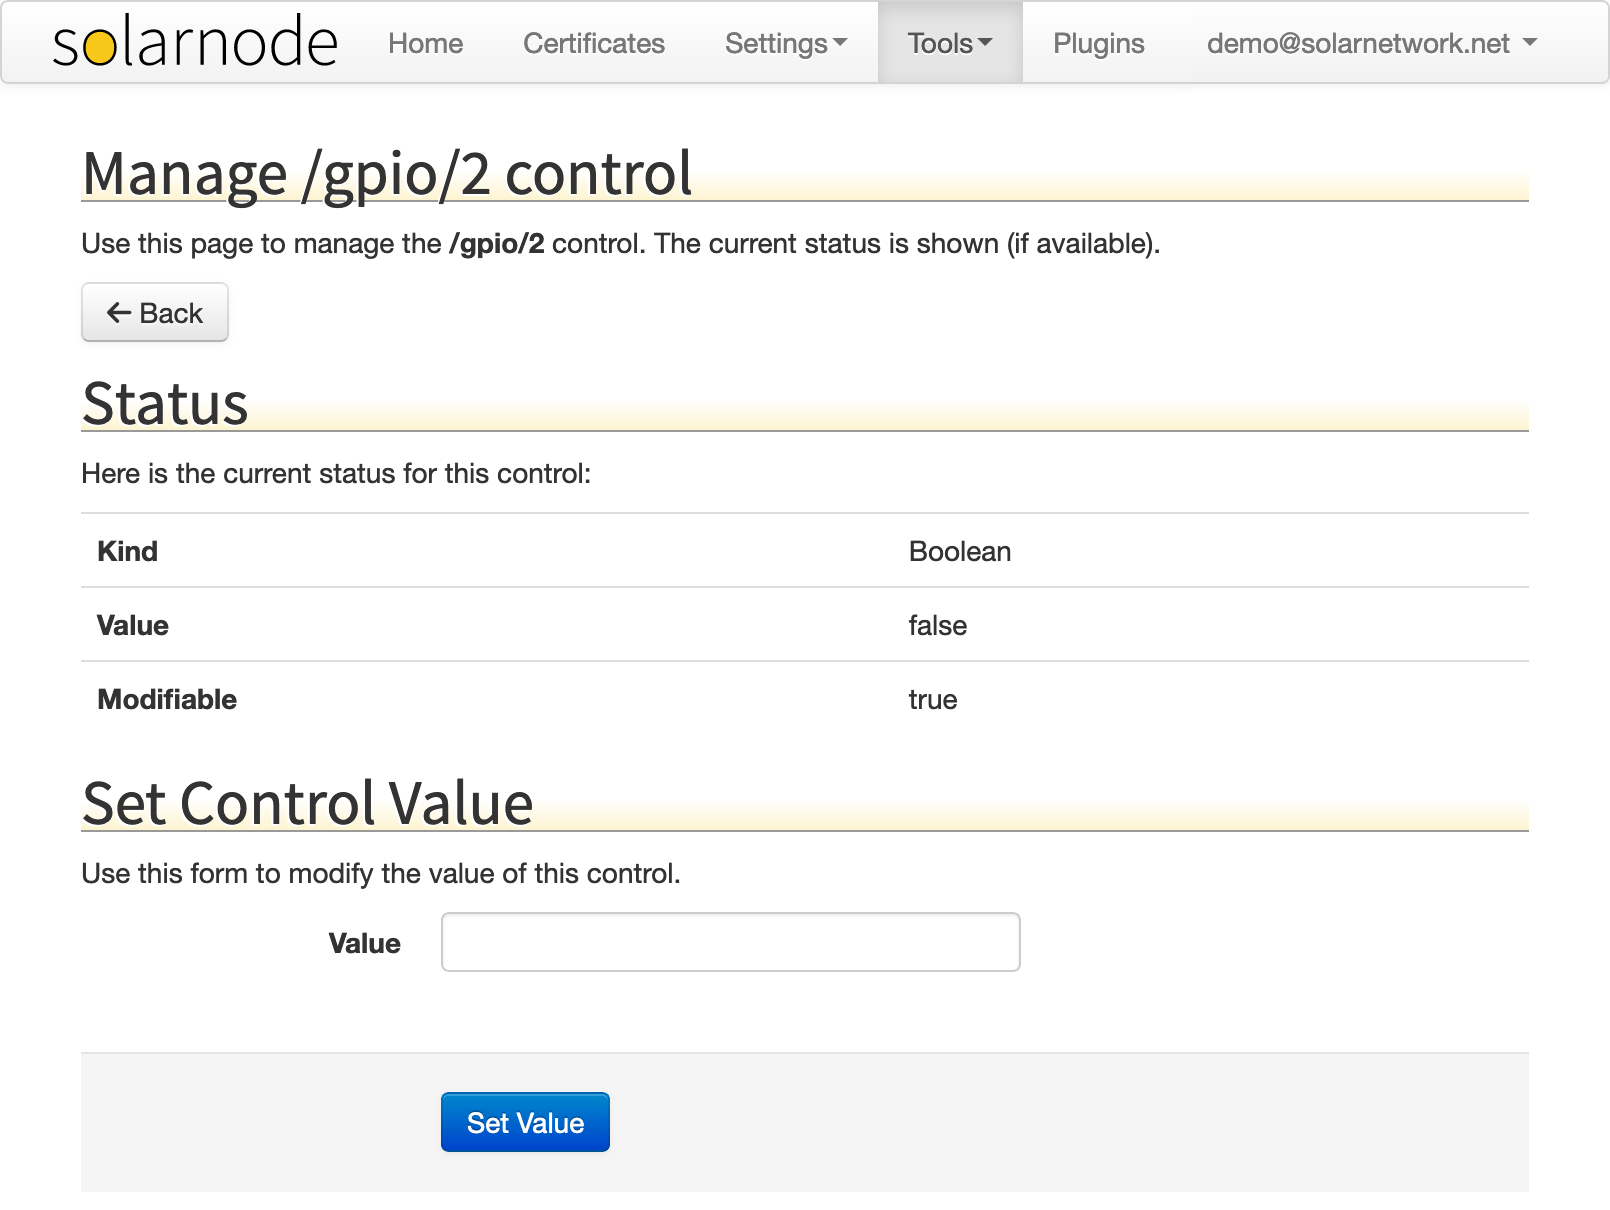 SolarNode controls edit form